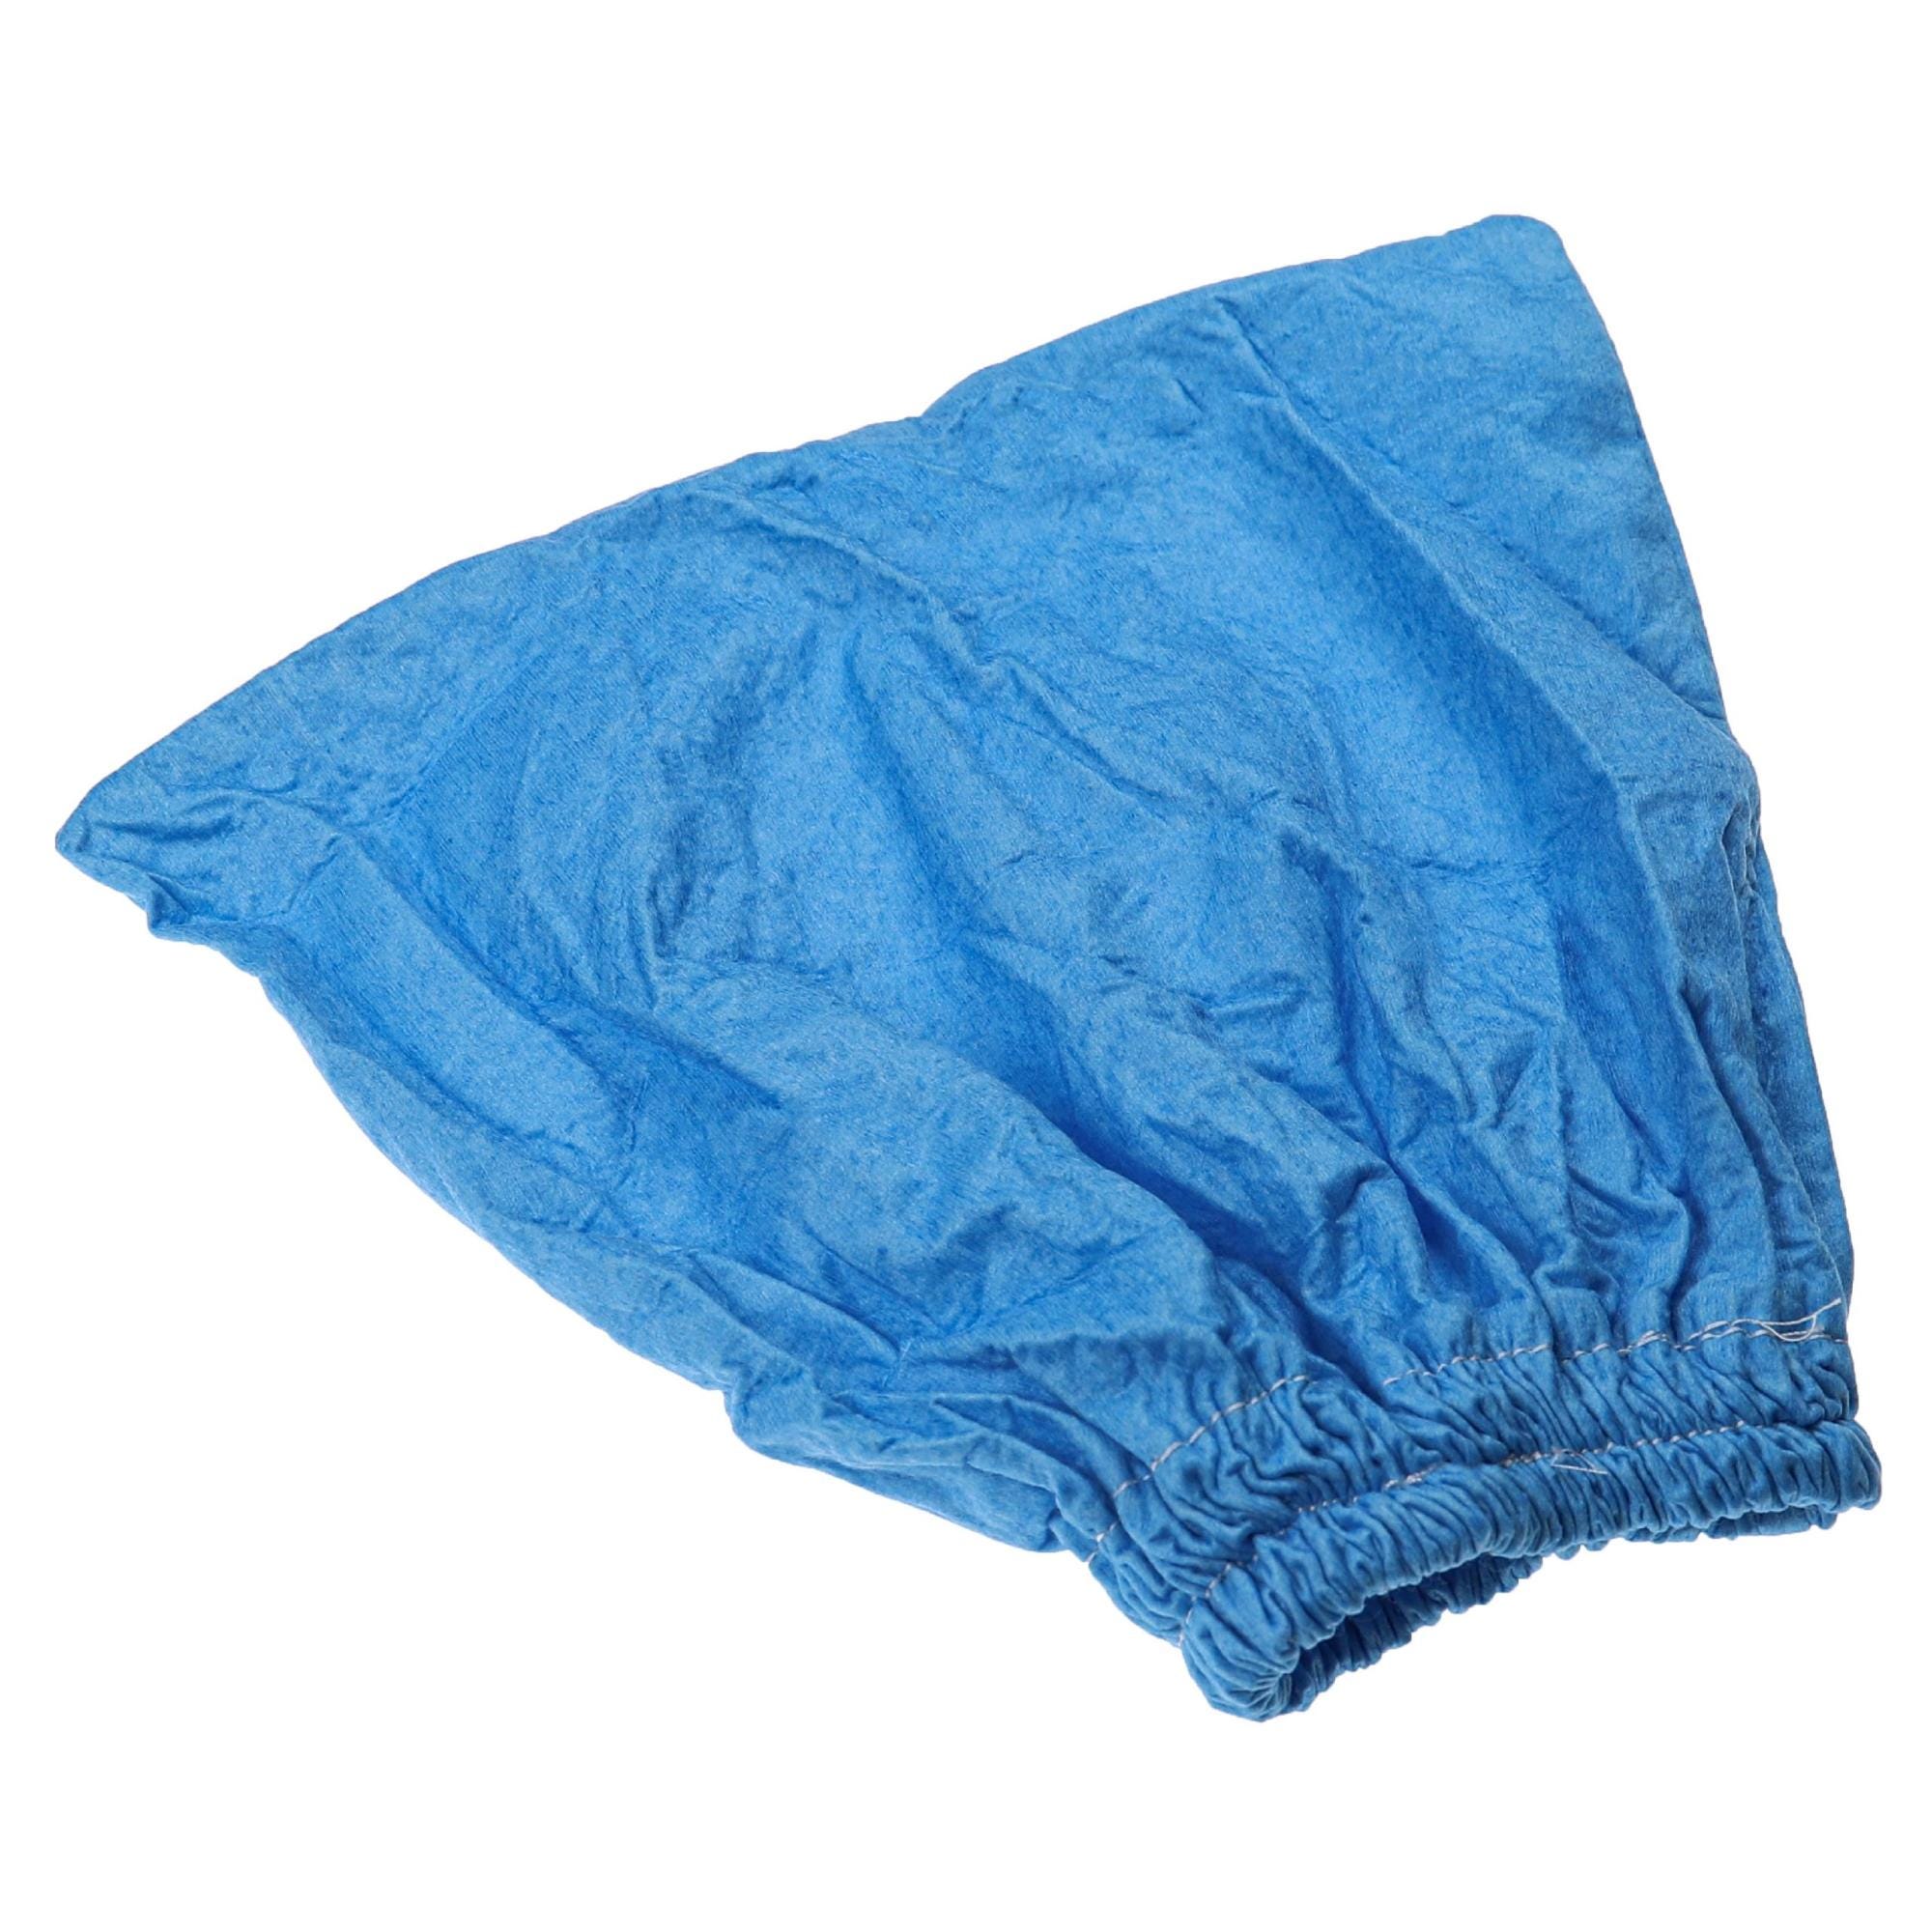 Vhbw filtro in tessuto compatibile con Lidl / Parkside PNTS 1250  aspirapolvere, aspiratore a secco/umido - Sacchetto in tessuto, lavabile,  blu